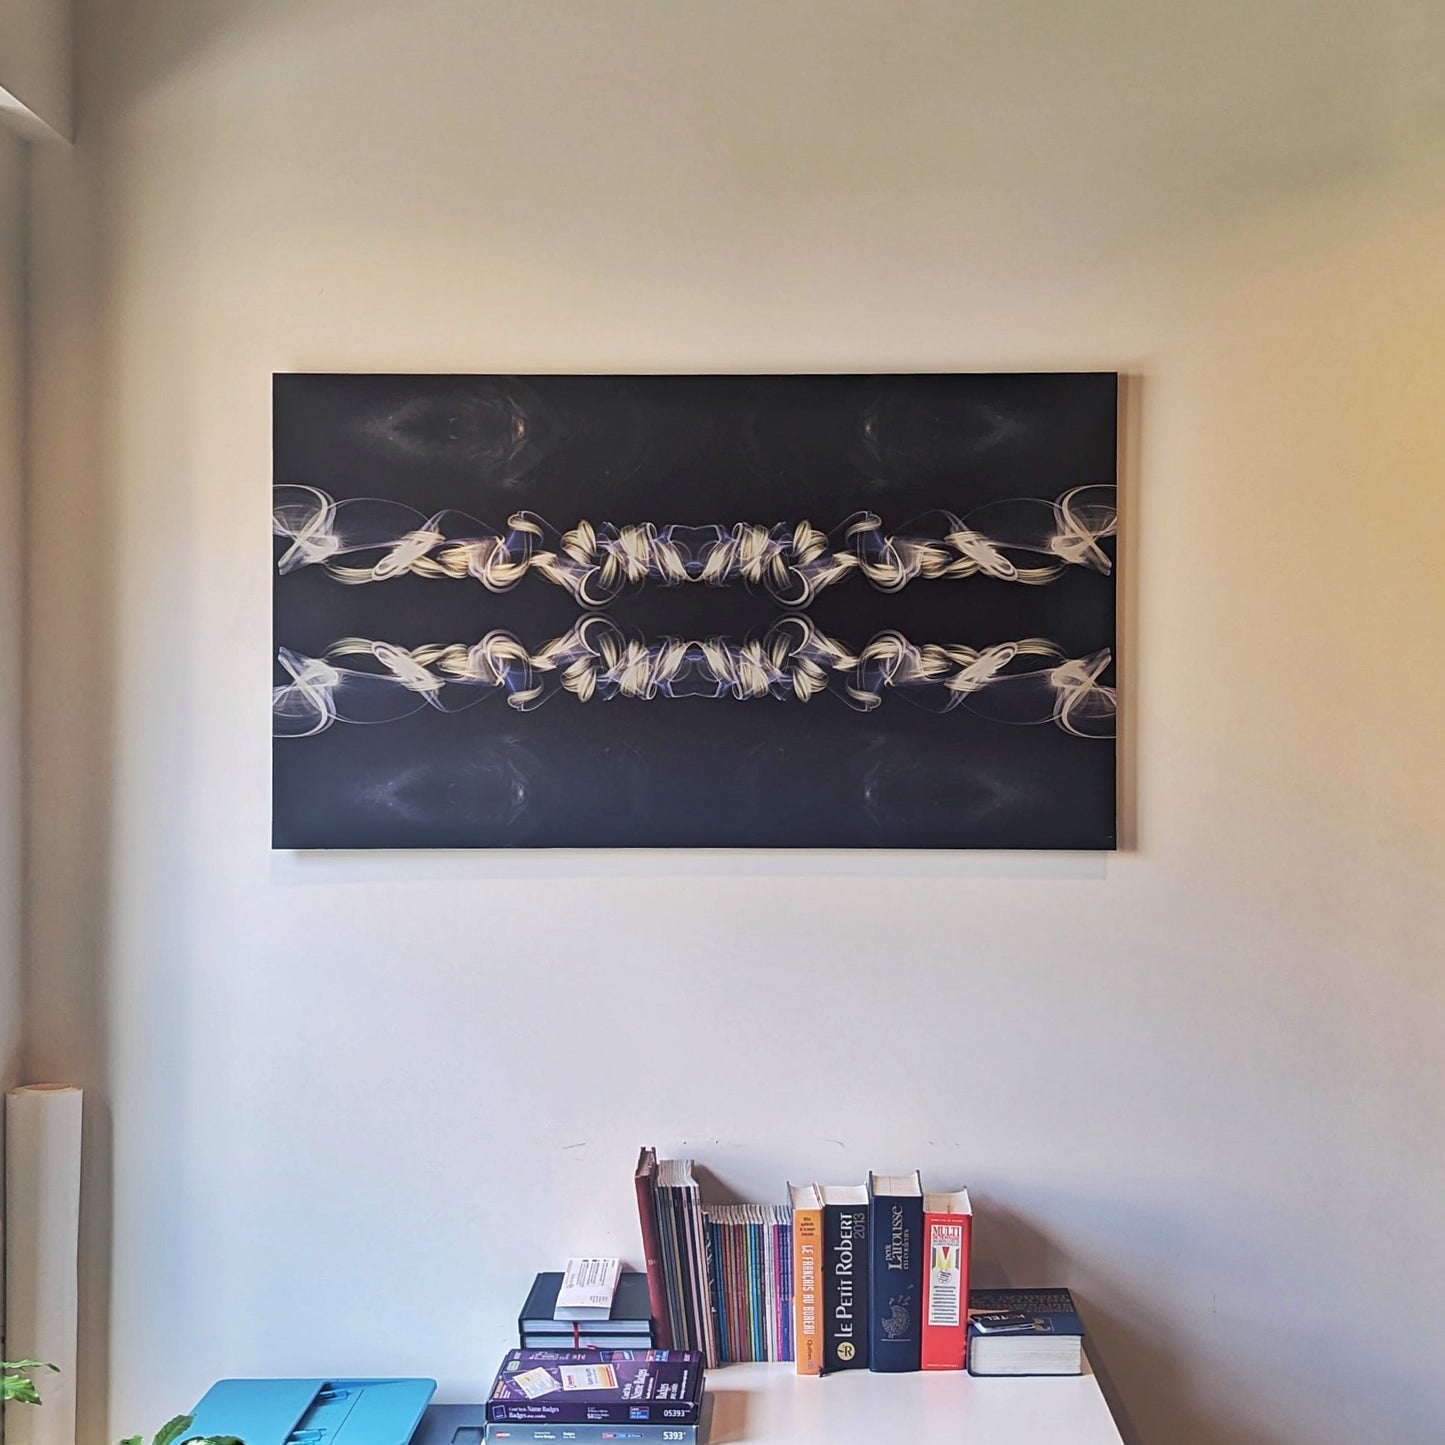 Impression d’art light painting sur planche métallique - Décoration d’art de luxe pour la maison - Resilience par Jeff Malo